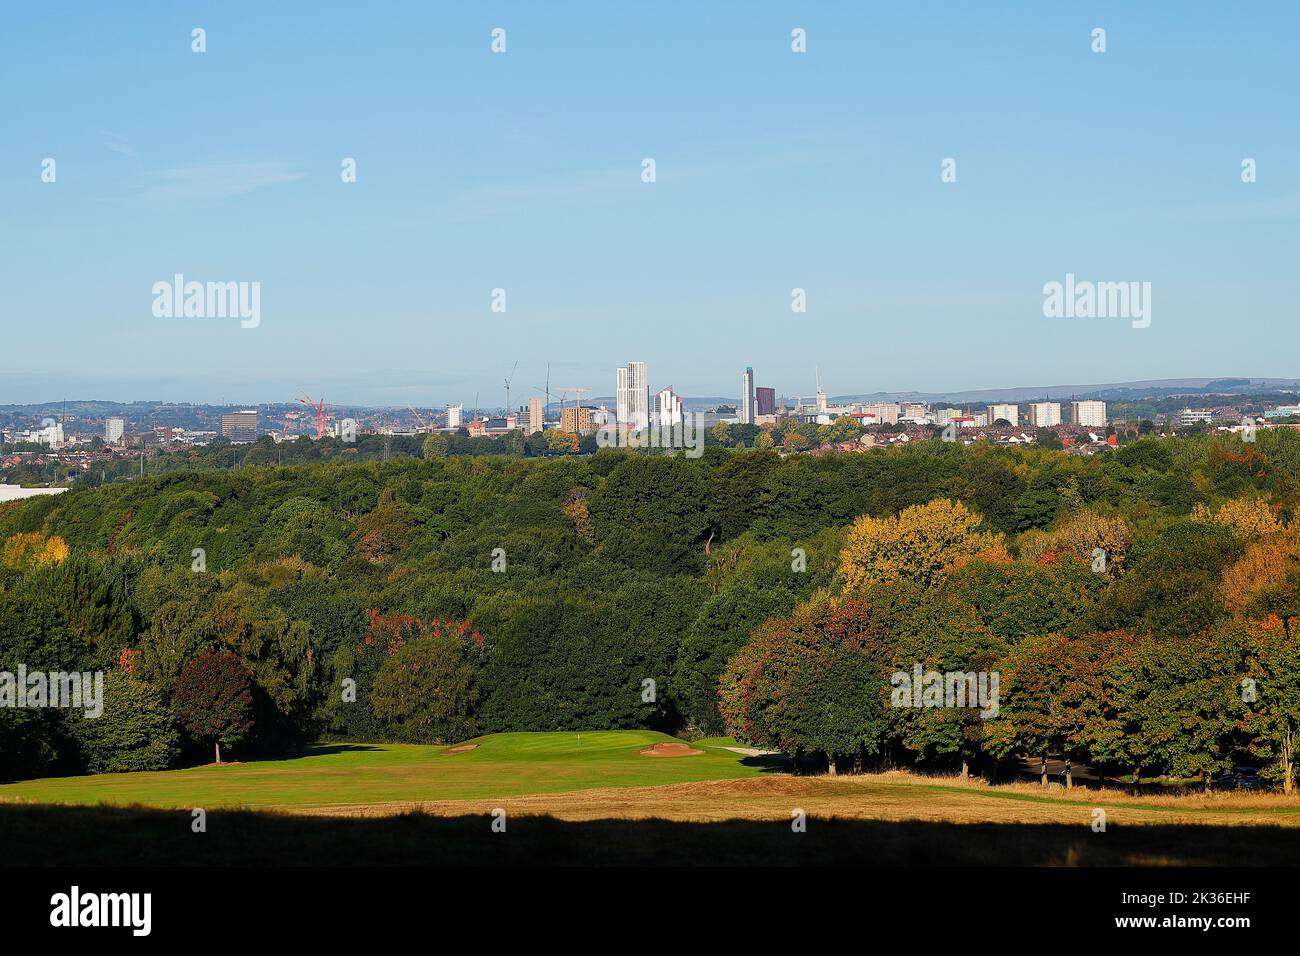 Una vista del horizonte de la ciudad de Leeds con grúas torre en los lugares de construcción Foto de stock